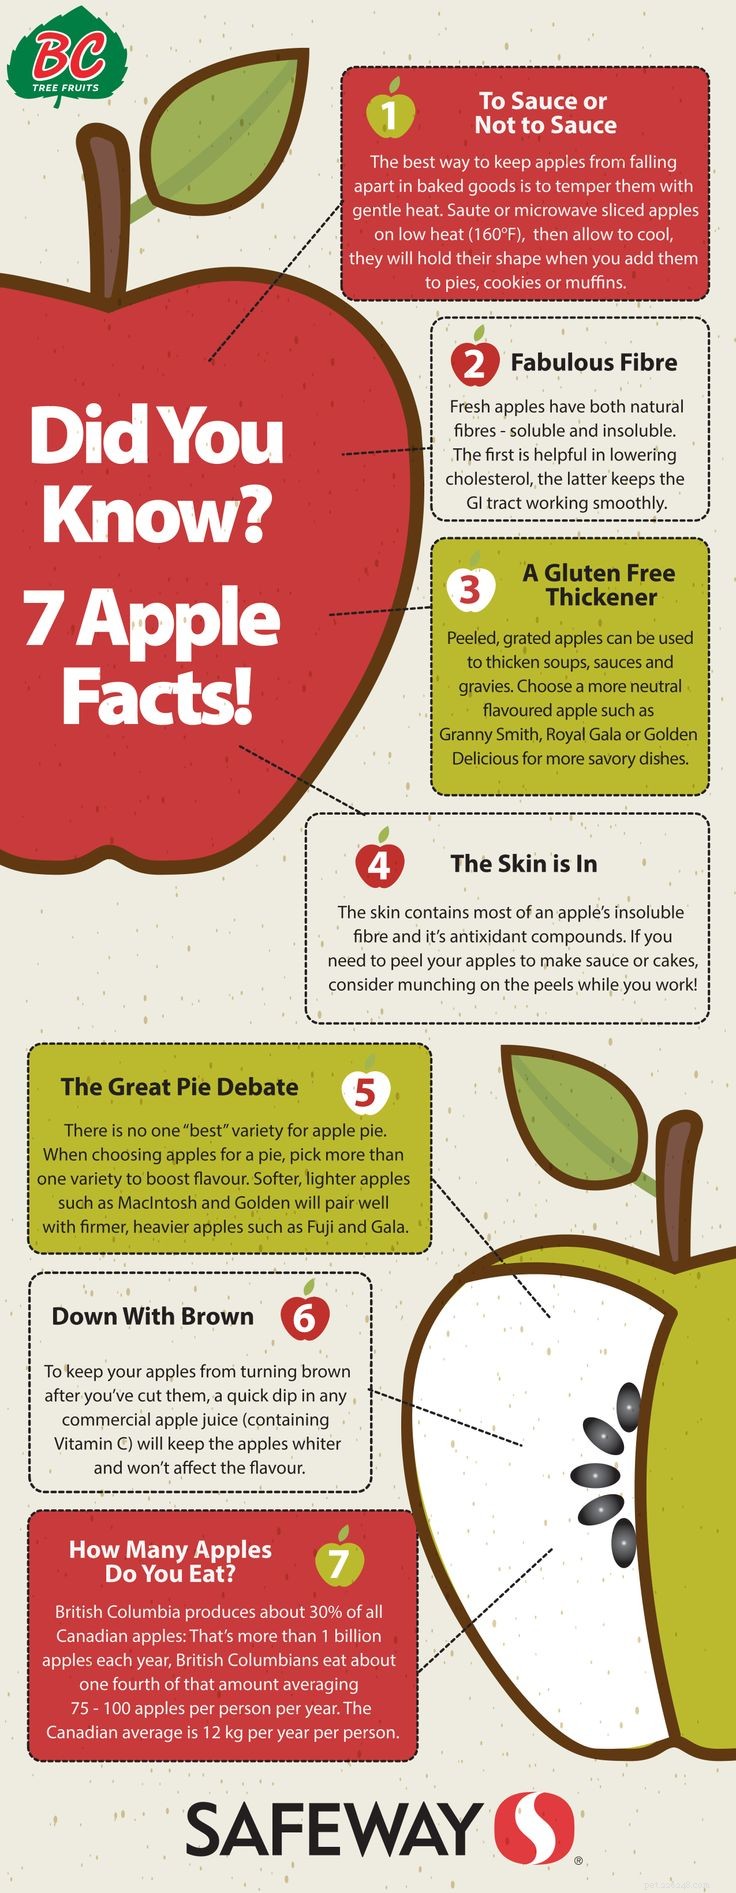 Os cães podem comer maçãs? 8 benefícios potenciais e 3 precauções